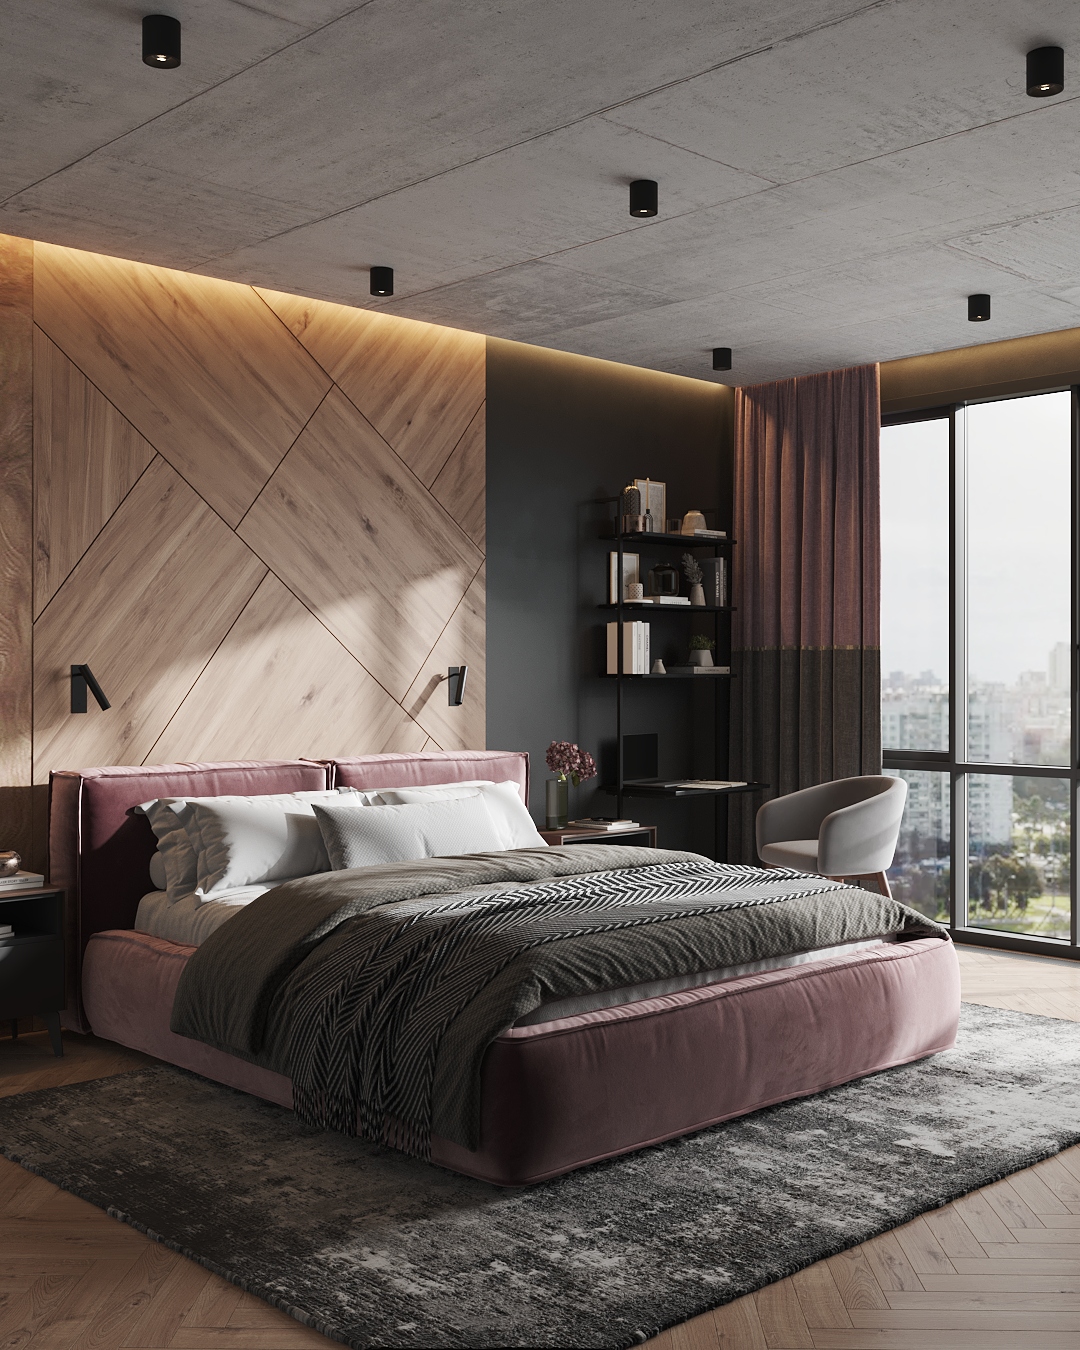 Спальня с кроватью Vento с обивкой из розовой замши: фото